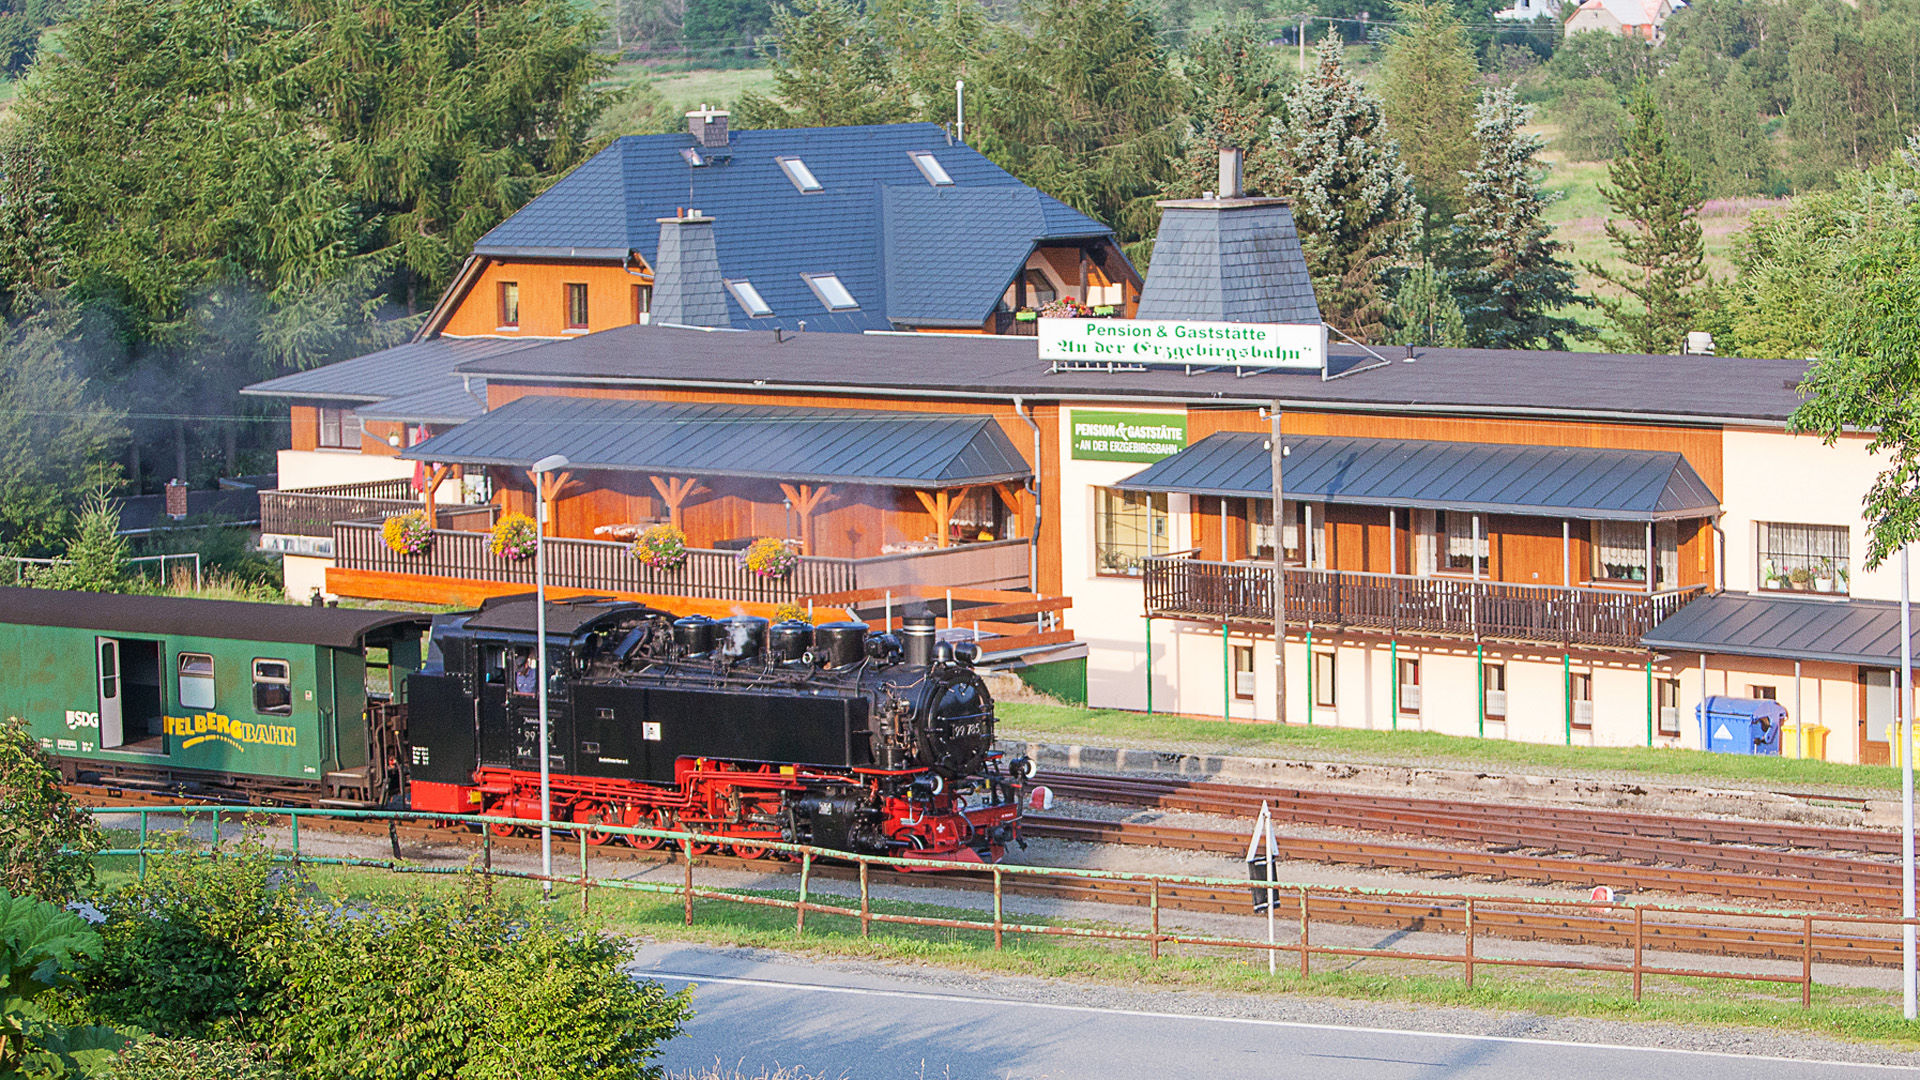 Dampfzug im Bahnhof Hammerunterwiesenthal vor der Pension an der Erzgebirgsbahn 
© http://www.digitalfotodesign.de